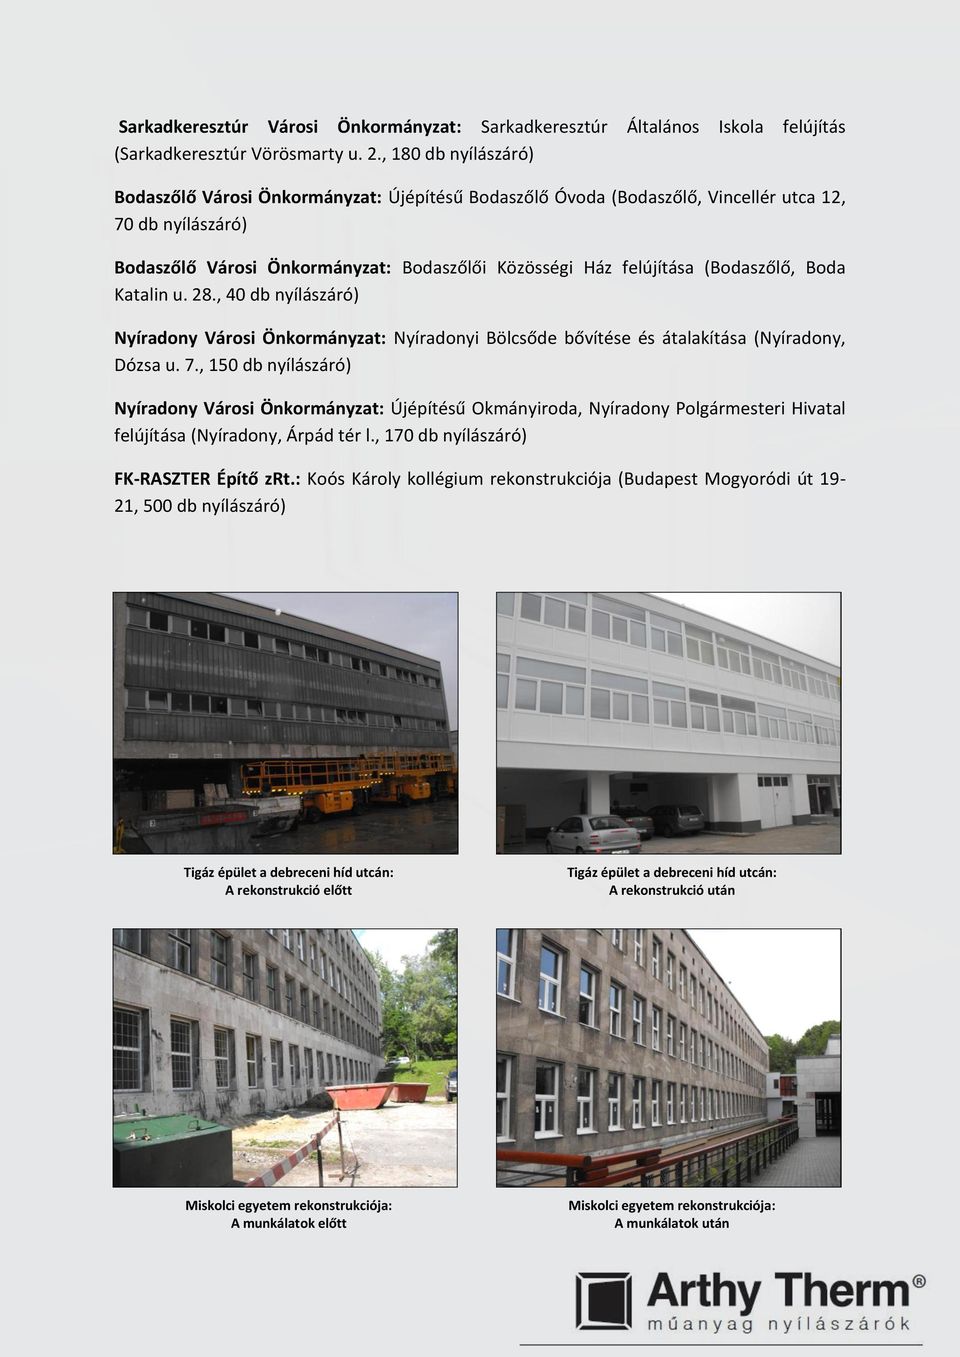 28., 40 db Nyíradony Városi Önkormányzat: Nyíradonyi Bölcsőde bővítése és átalakítása (Nyíradony, Dózsa u. 7.